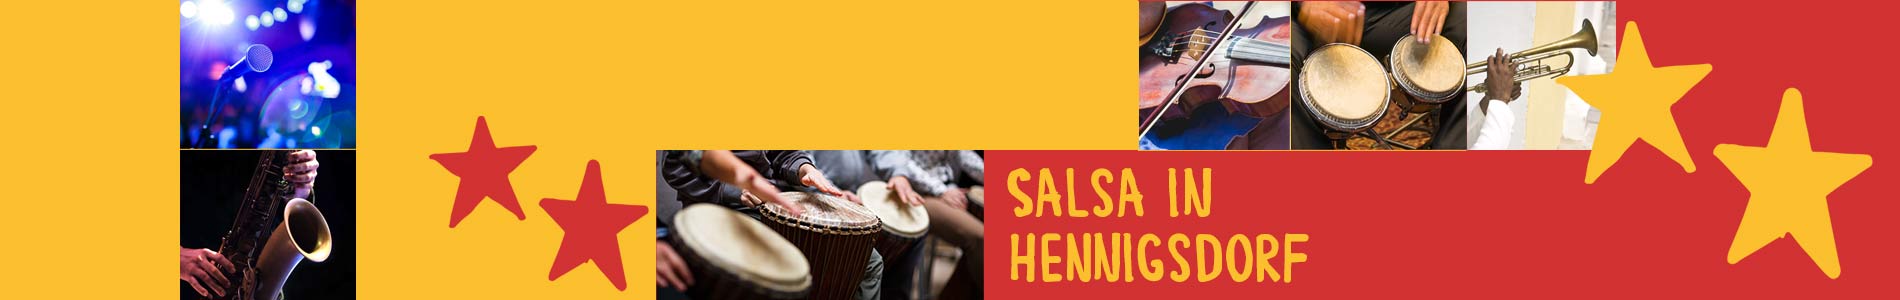 Salsa in Hennigsdorf – Salsa lernen und tanzen, Tanzkurse, Partys, Veranstaltungen